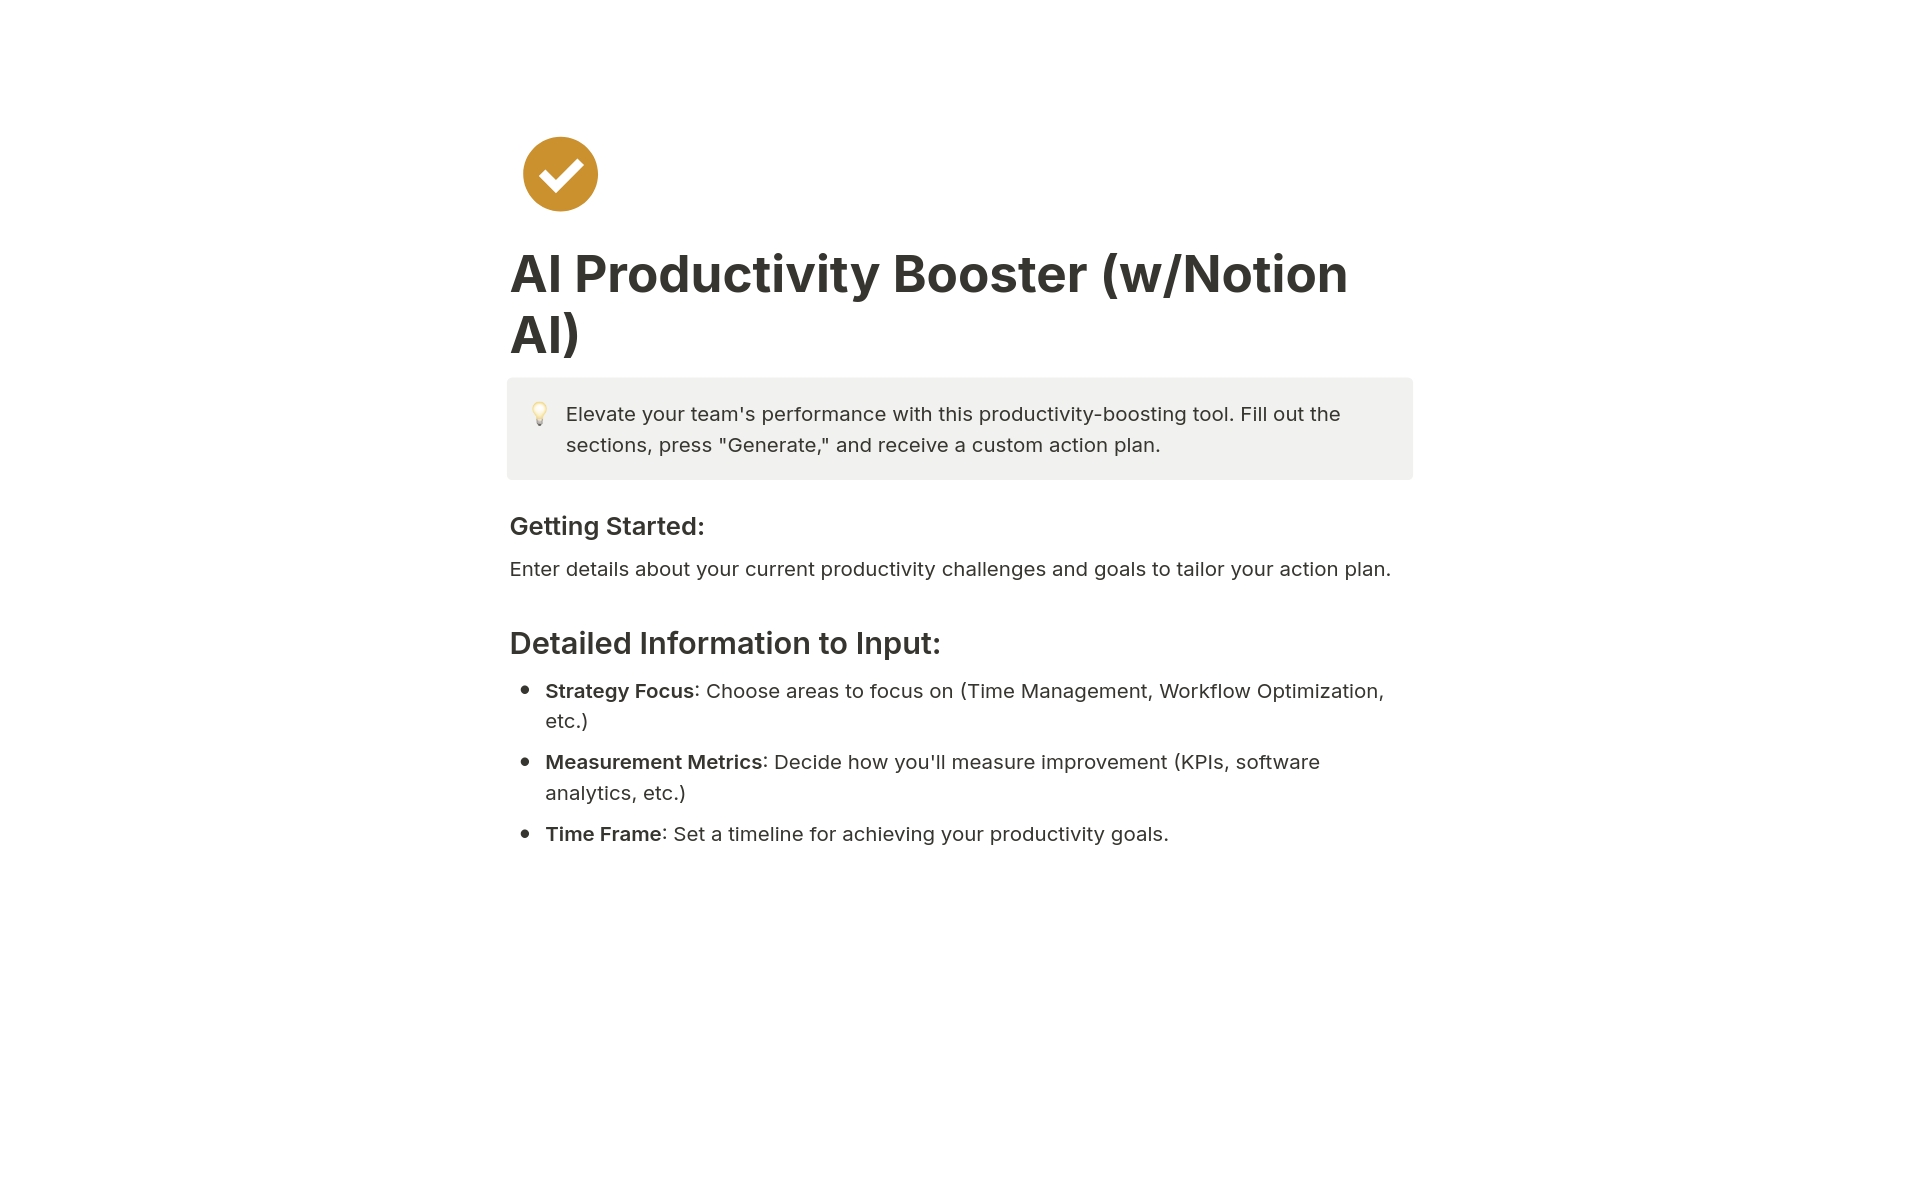 Uma prévia do modelo para AI Productivity Booster